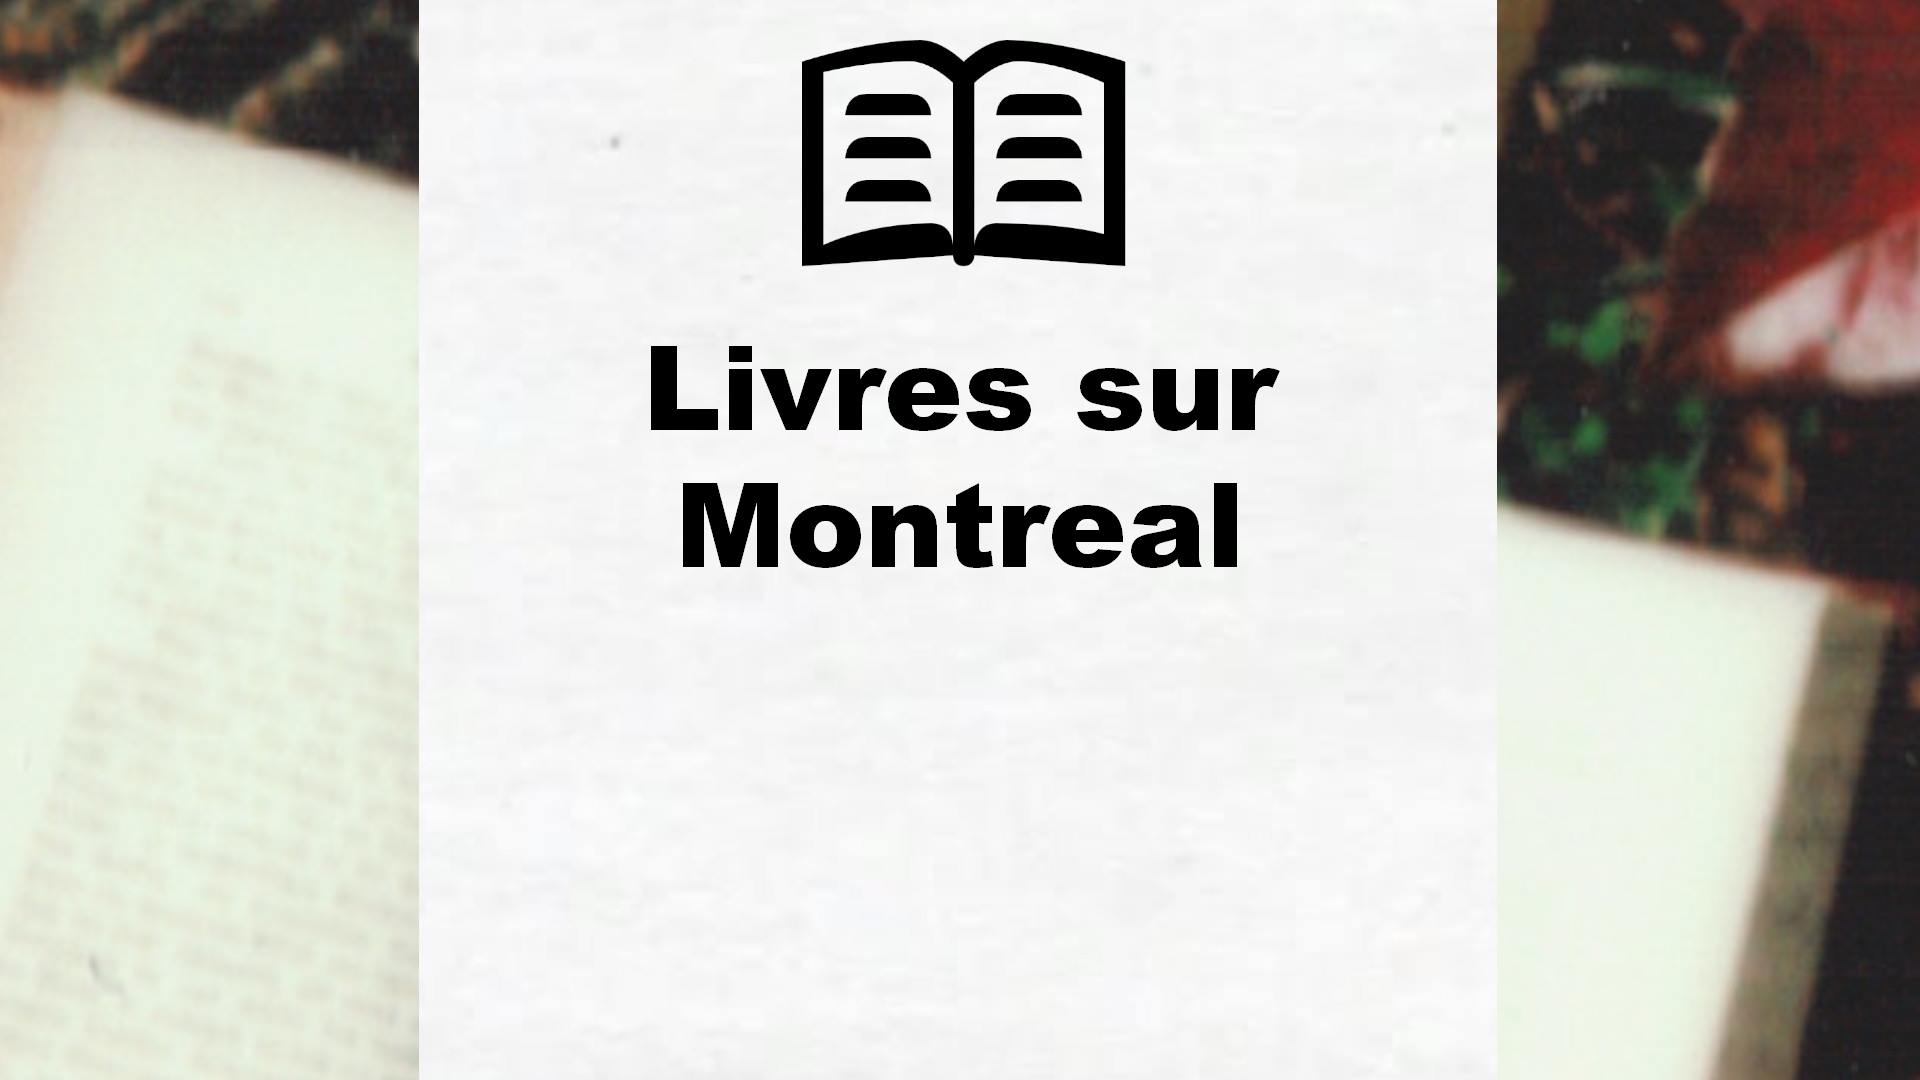 Livres sur Montreal